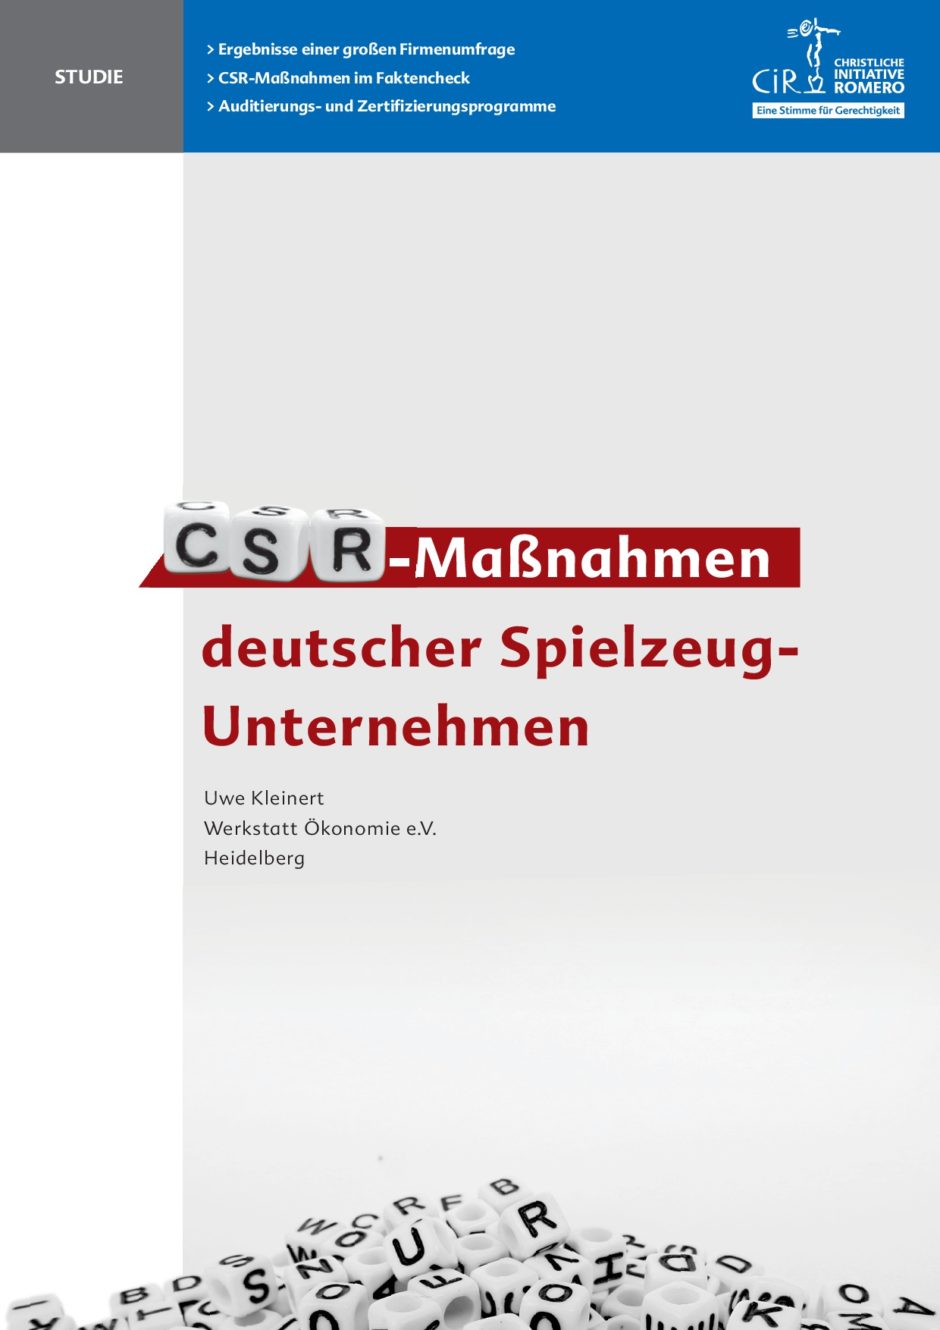 Cover der CSR-Studie von Uwe Kleinert